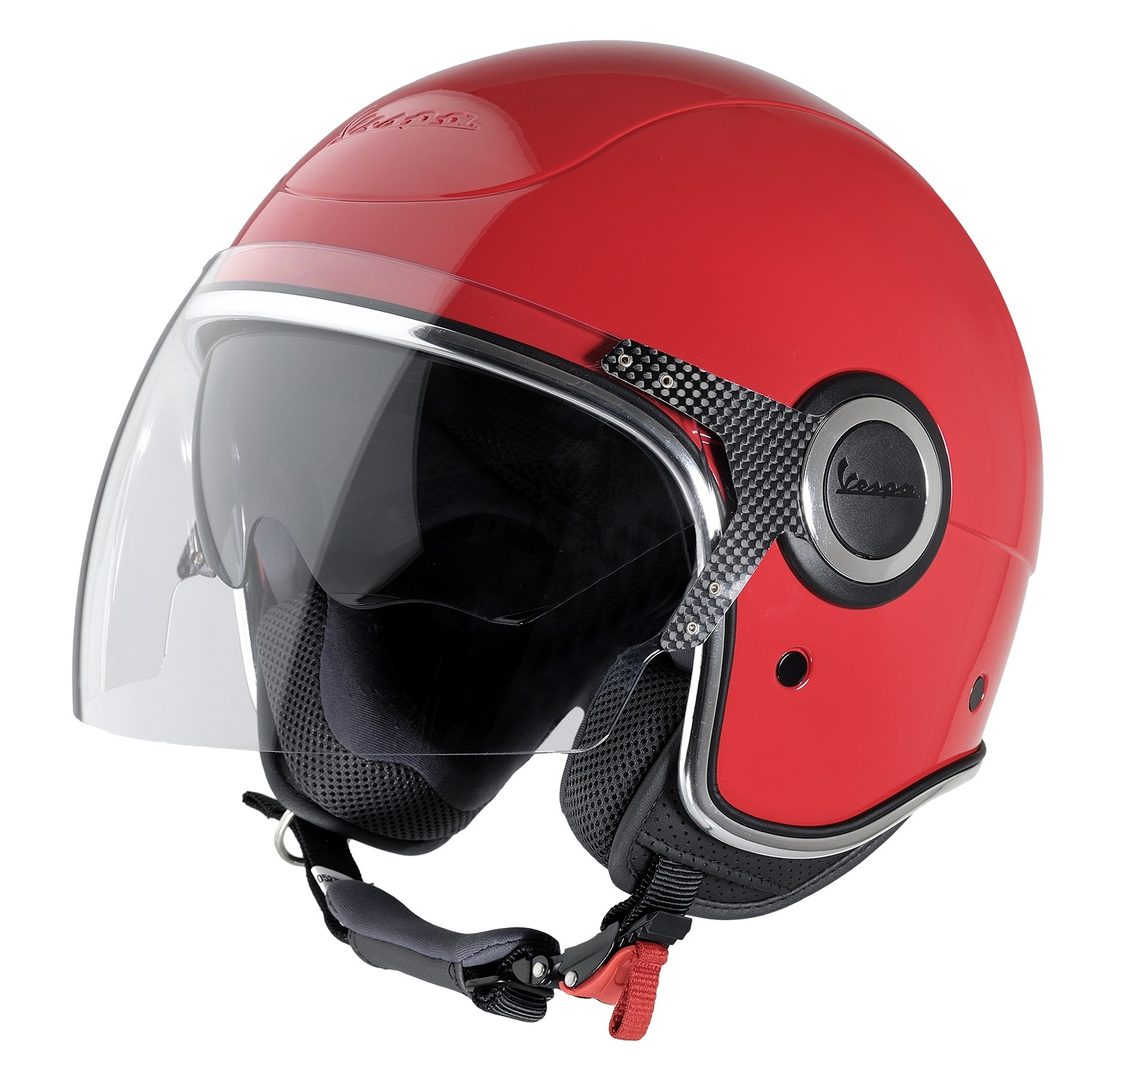 Moto helmy, přilby na motorku - K2Moto.cz - Splňte si svůj motocyklový sen